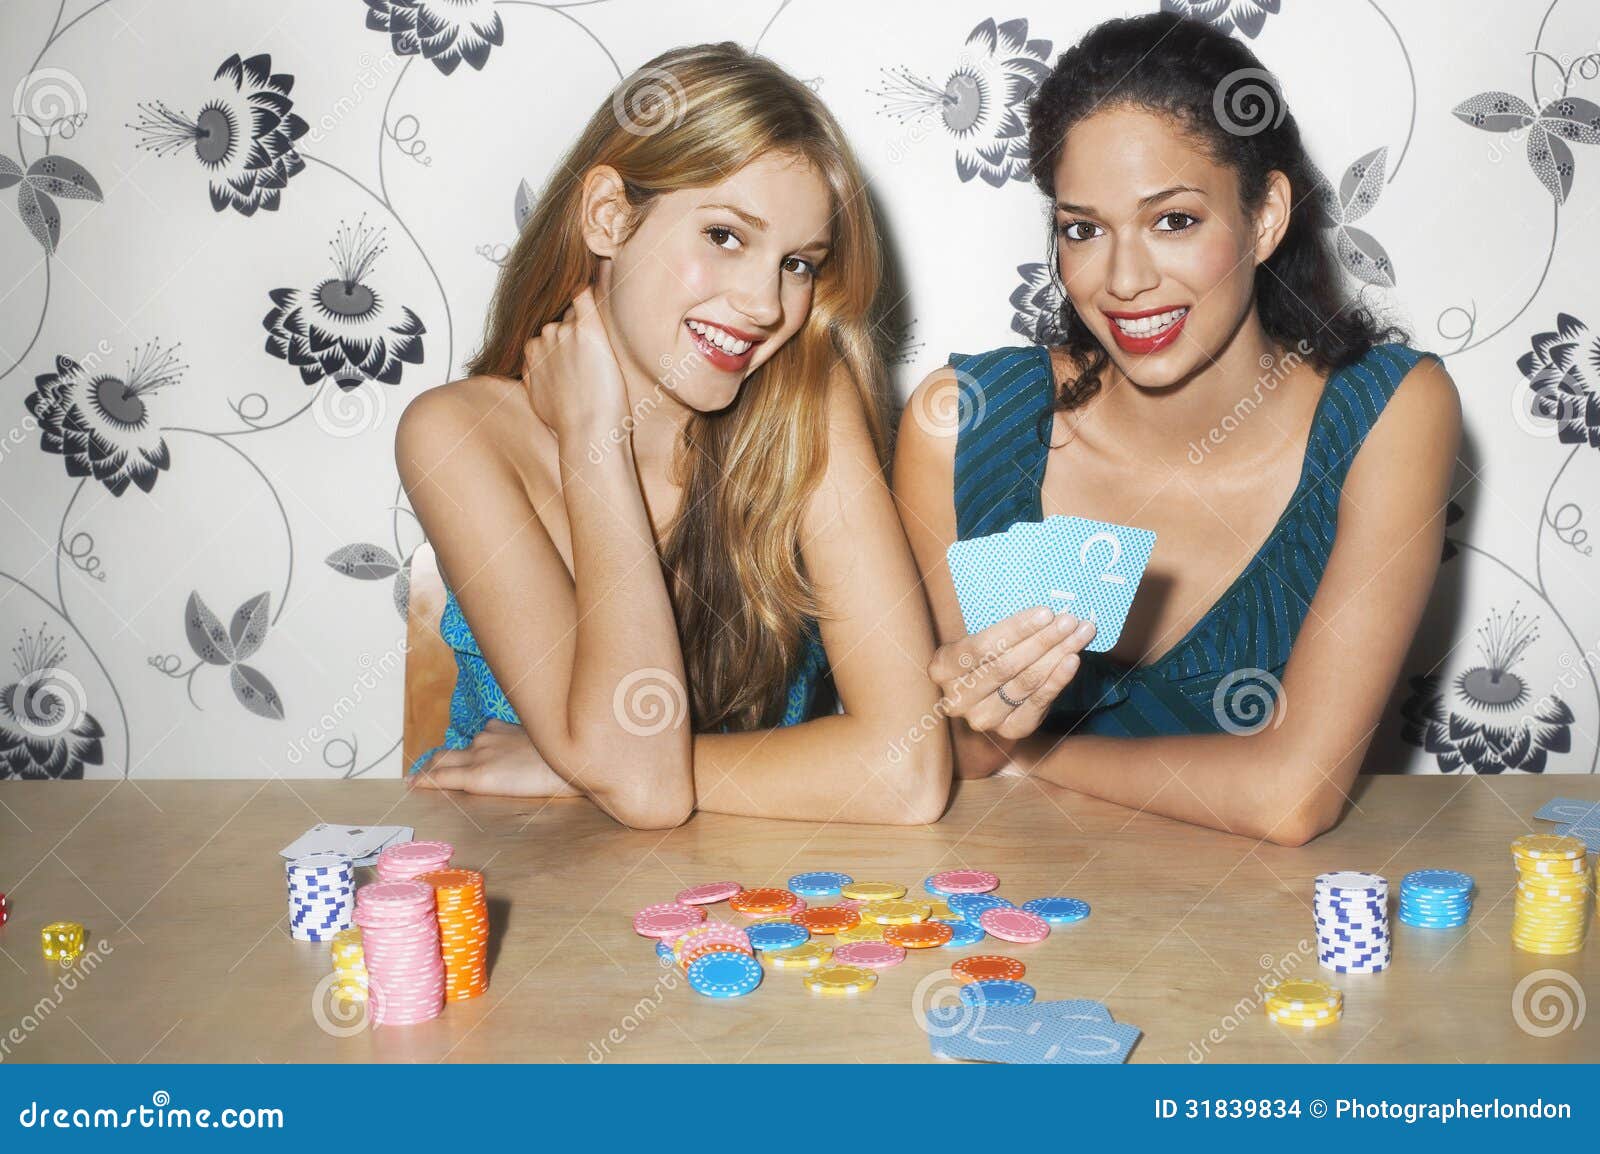 Играем с сестрой в карты на раздевание. Игра в карты на раздевание. Карты на раздевание картинки. Женщина с картами. Игра с подругой на раздевание.